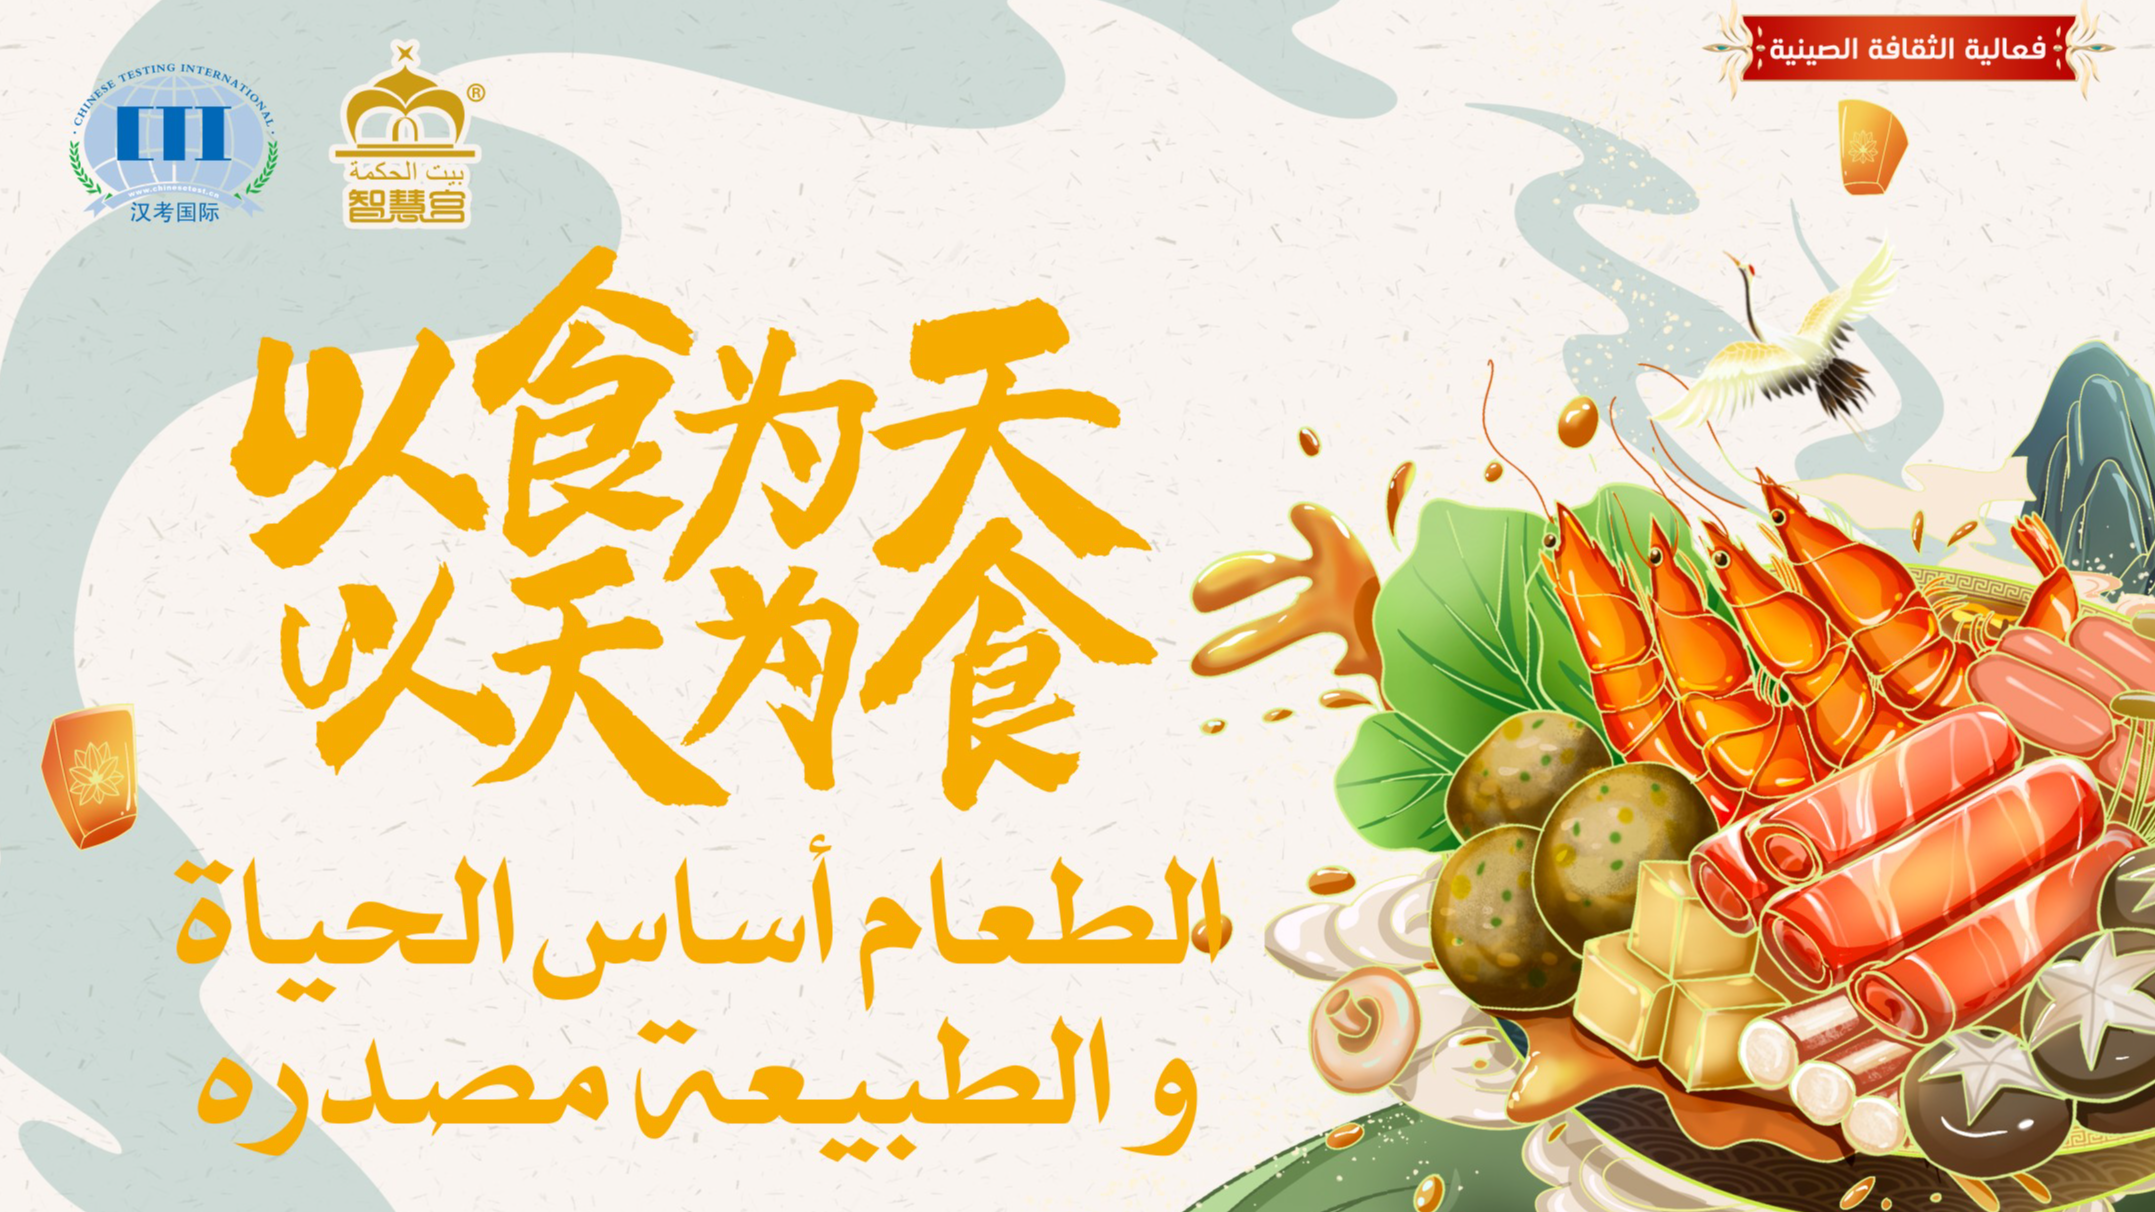 智慧宫海外 | 沙特智慧宫举办“以食为天，以天为食”中国美食体验活动